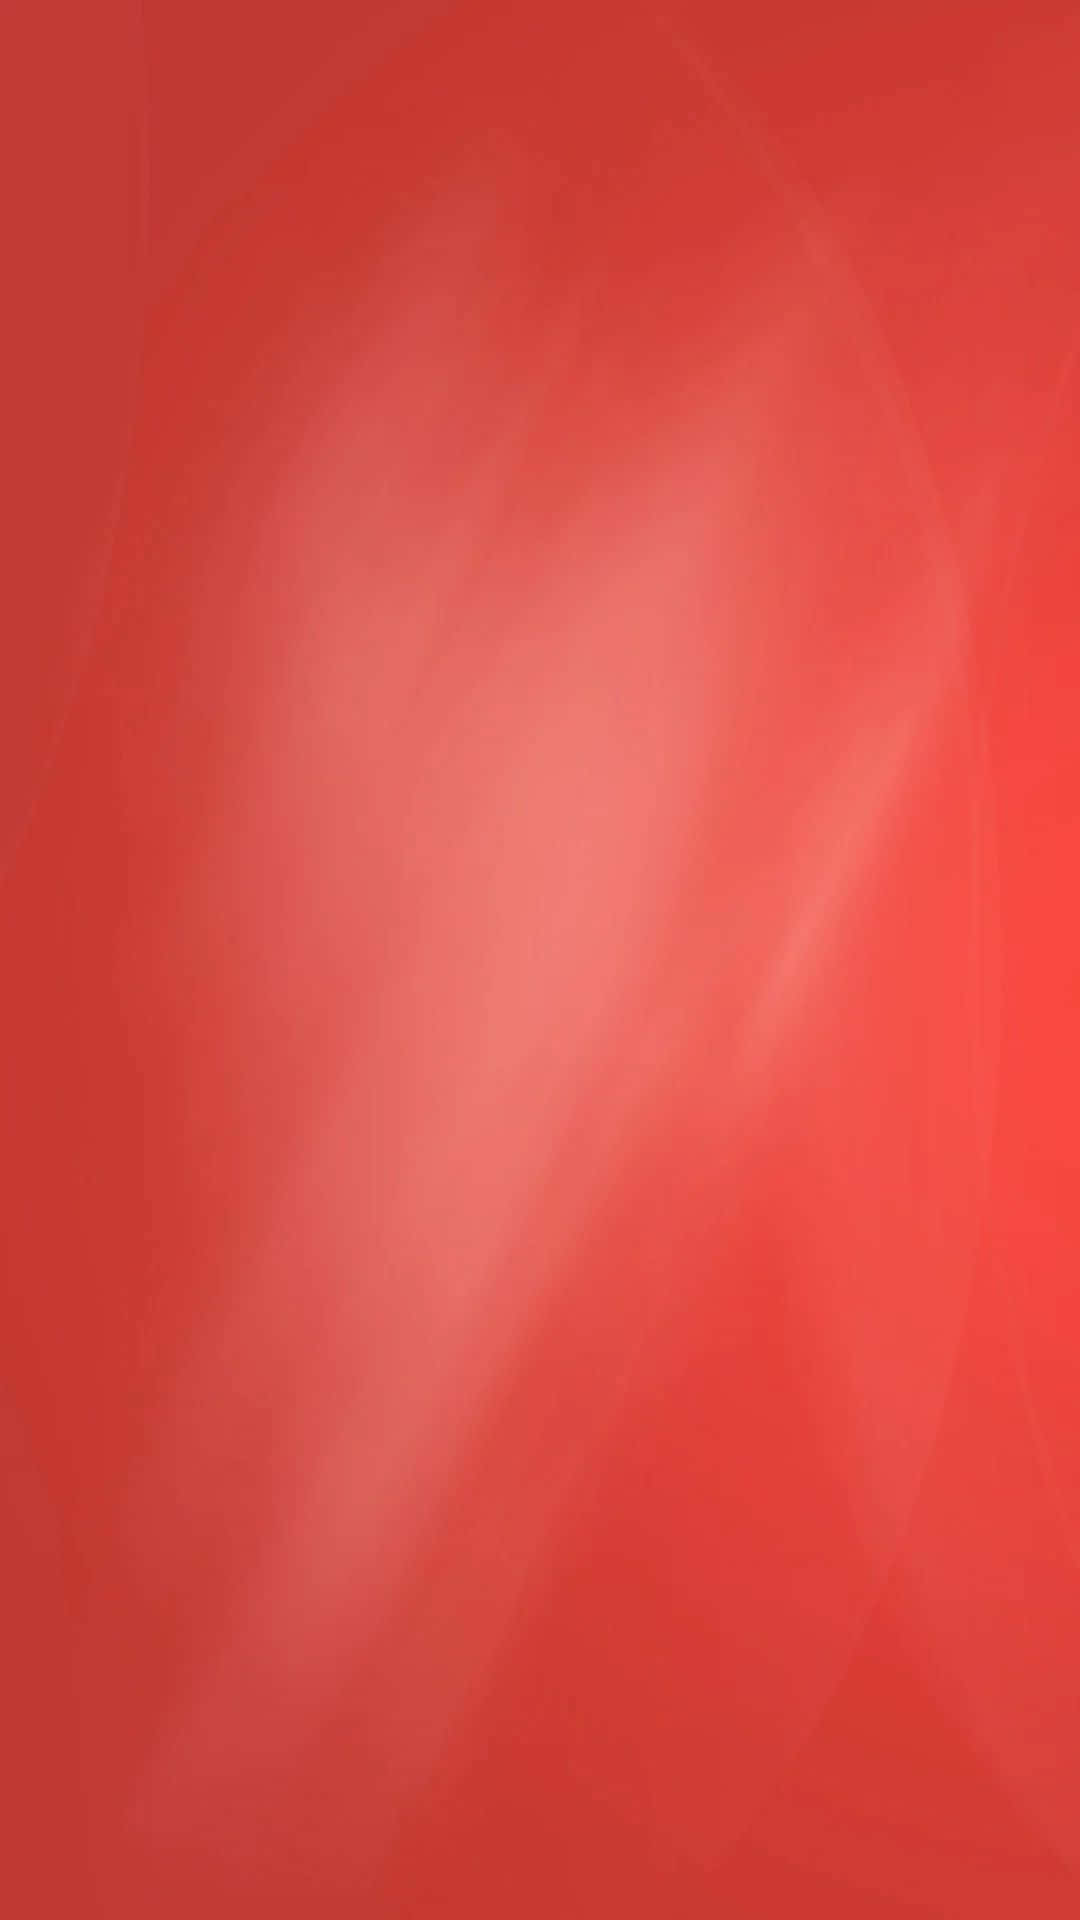 Vælg et livligt, solidt rødt for et modigt udtryk. Wallpaper